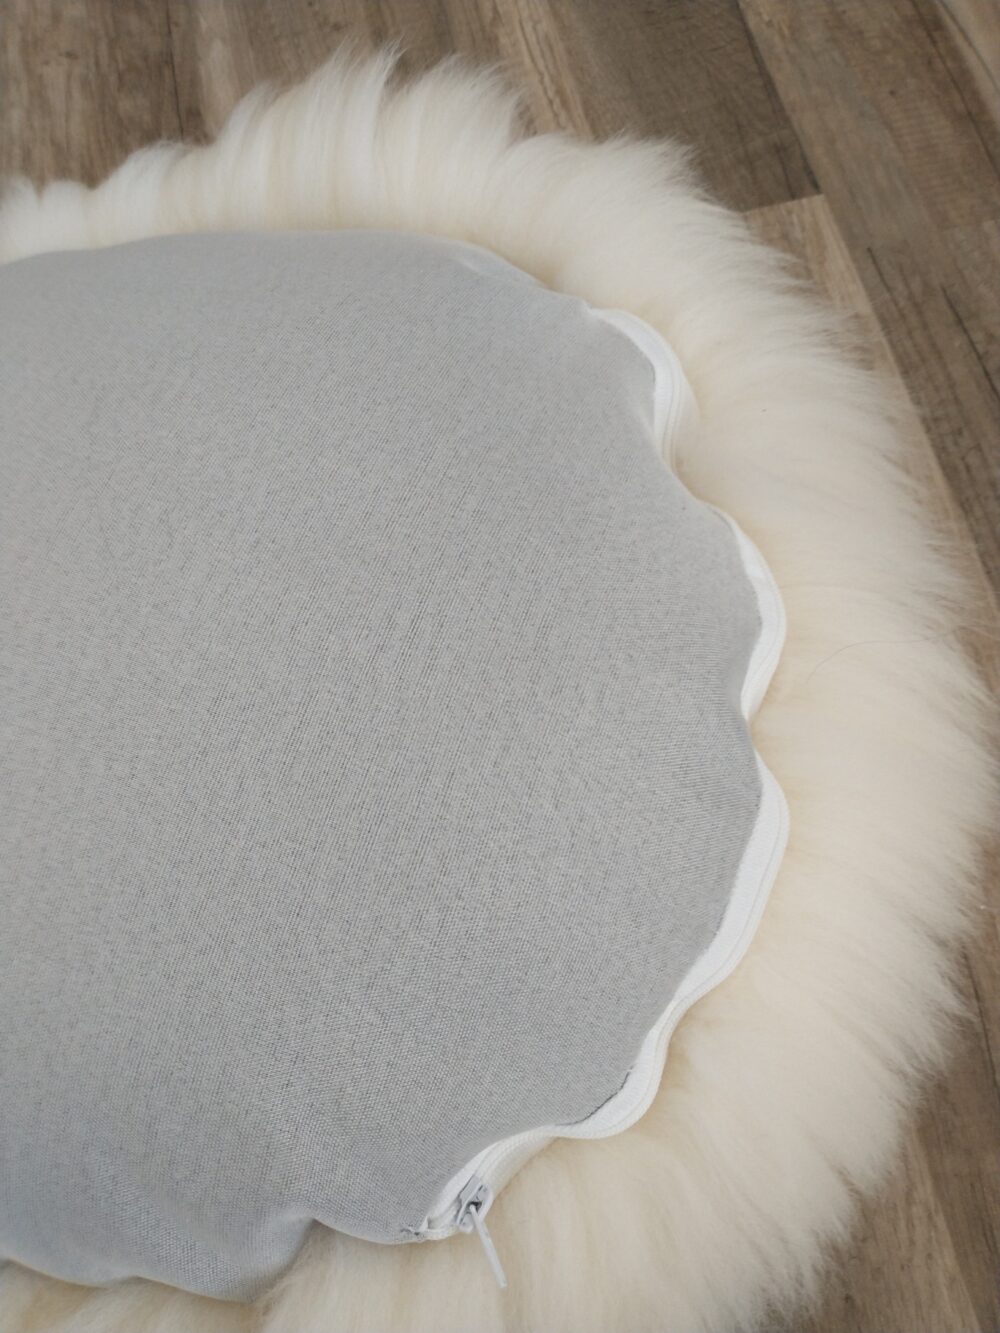 Round Sheepskin Pillow pillows Producent owczych skór dekoracyjnych | Tannery Sheepskin | KalSkór 6